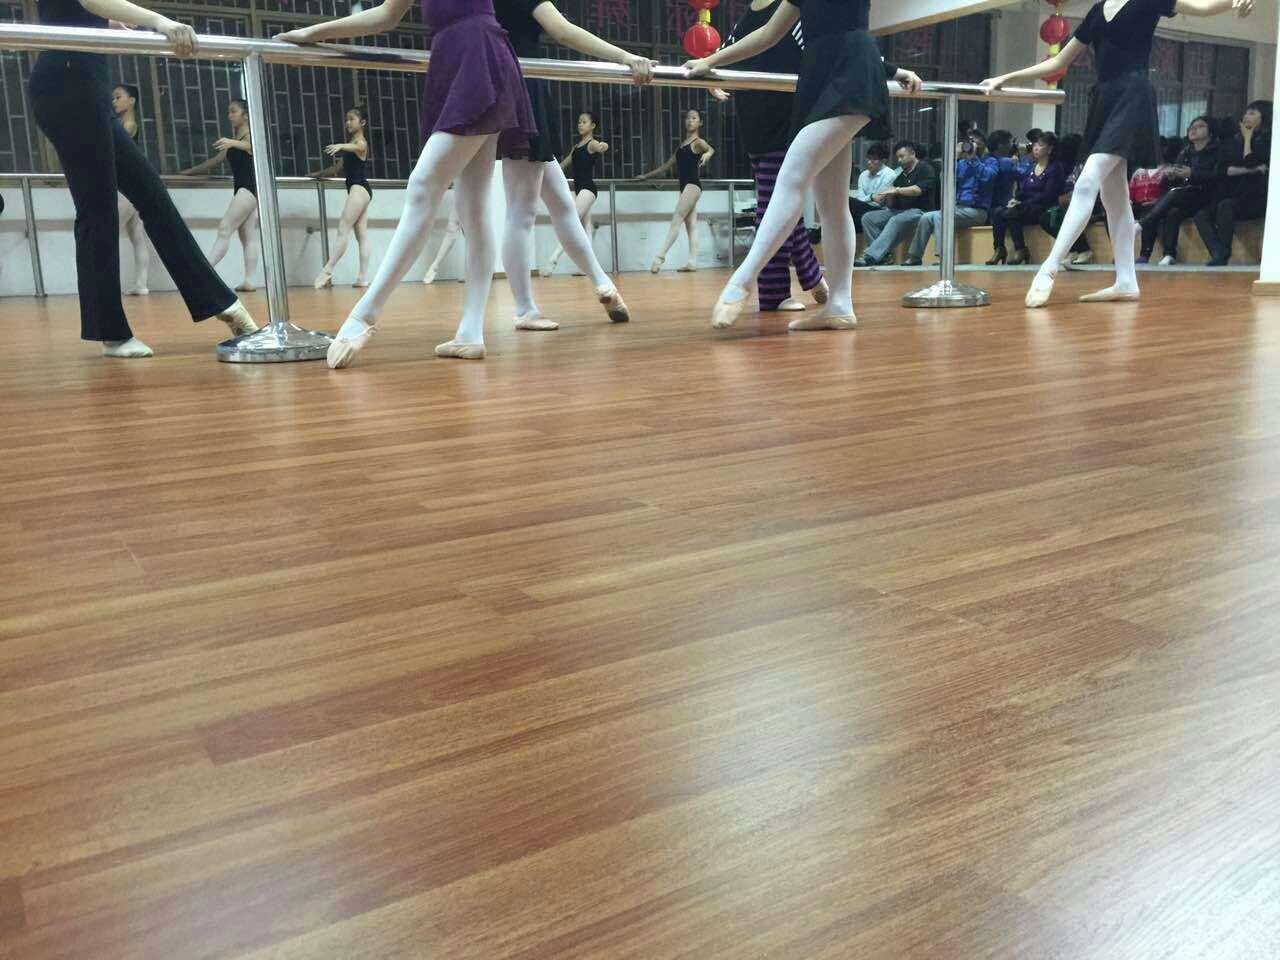 2015年1月29日晚深圳市十二月舞蹈艺术团和台湾方向舞蹈团的交流圆满成功